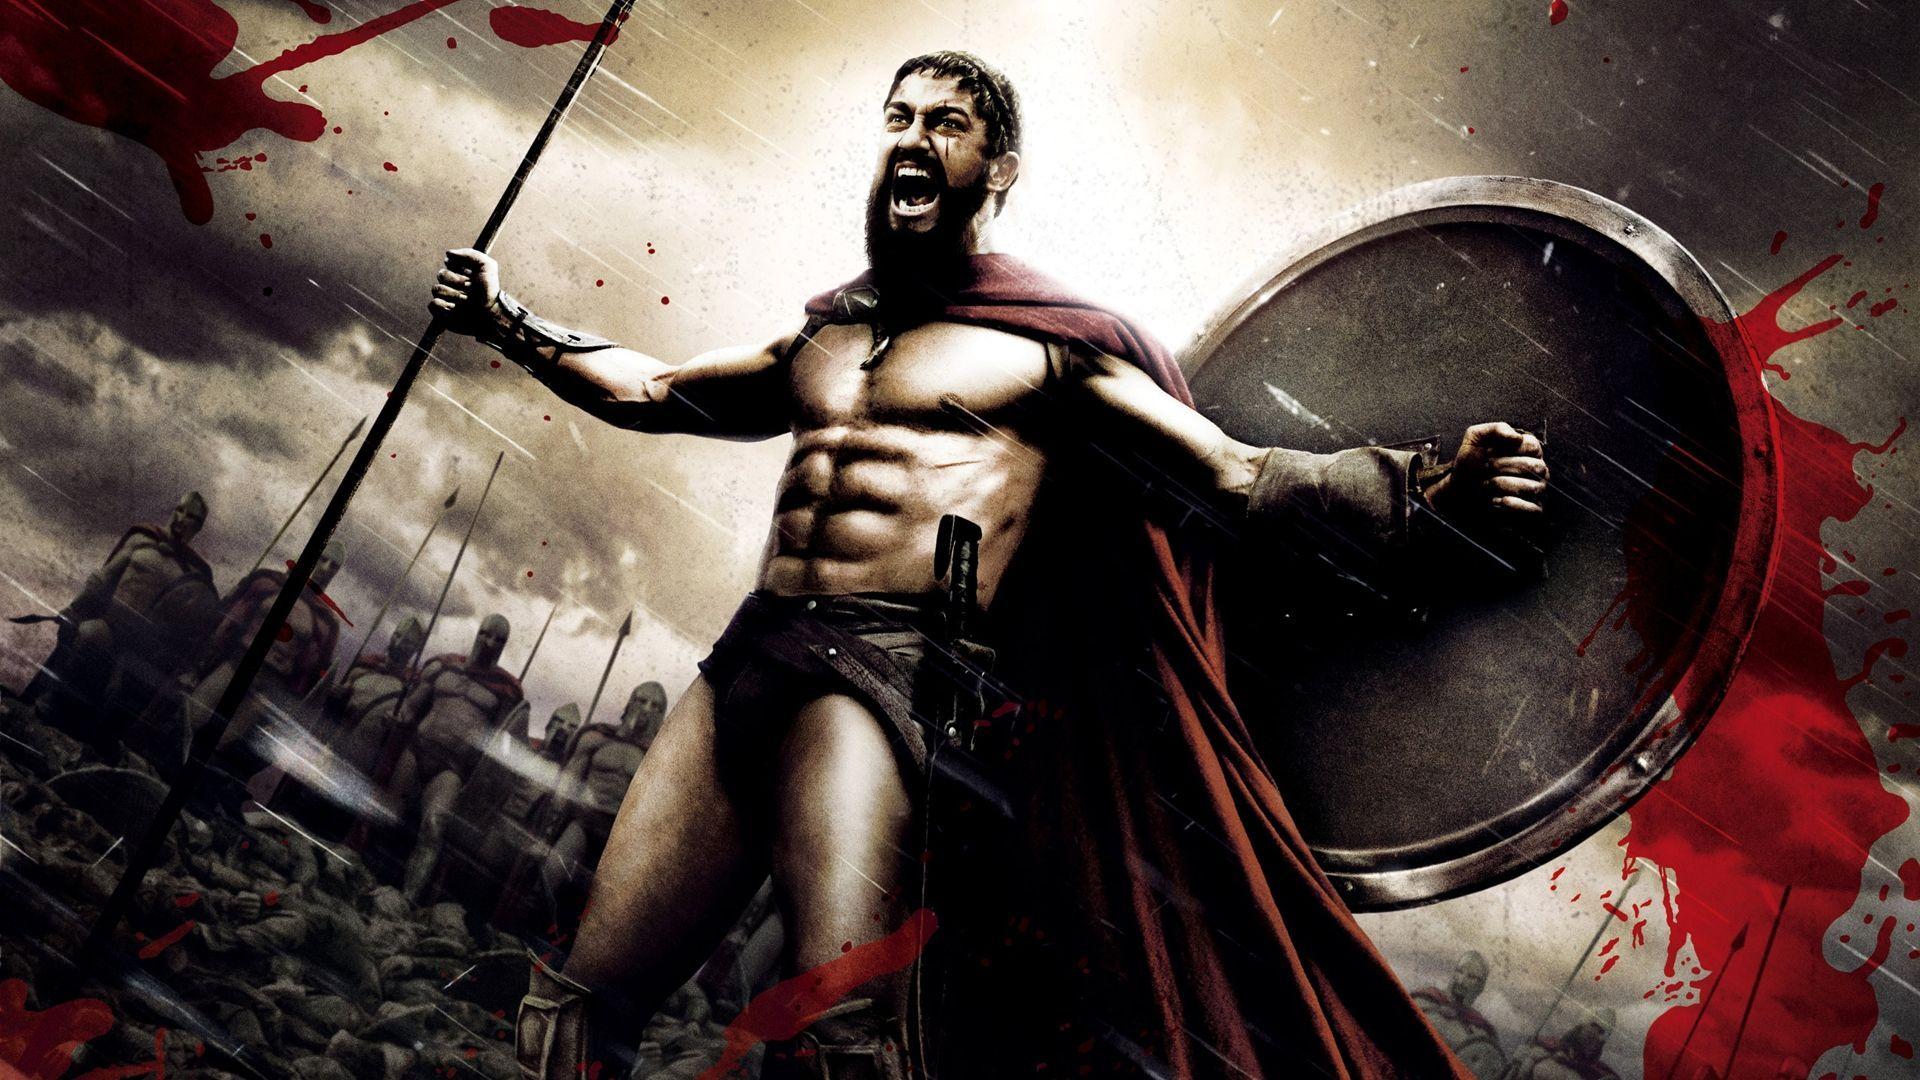 spartan warrior rage strong gerard butler king leonidas